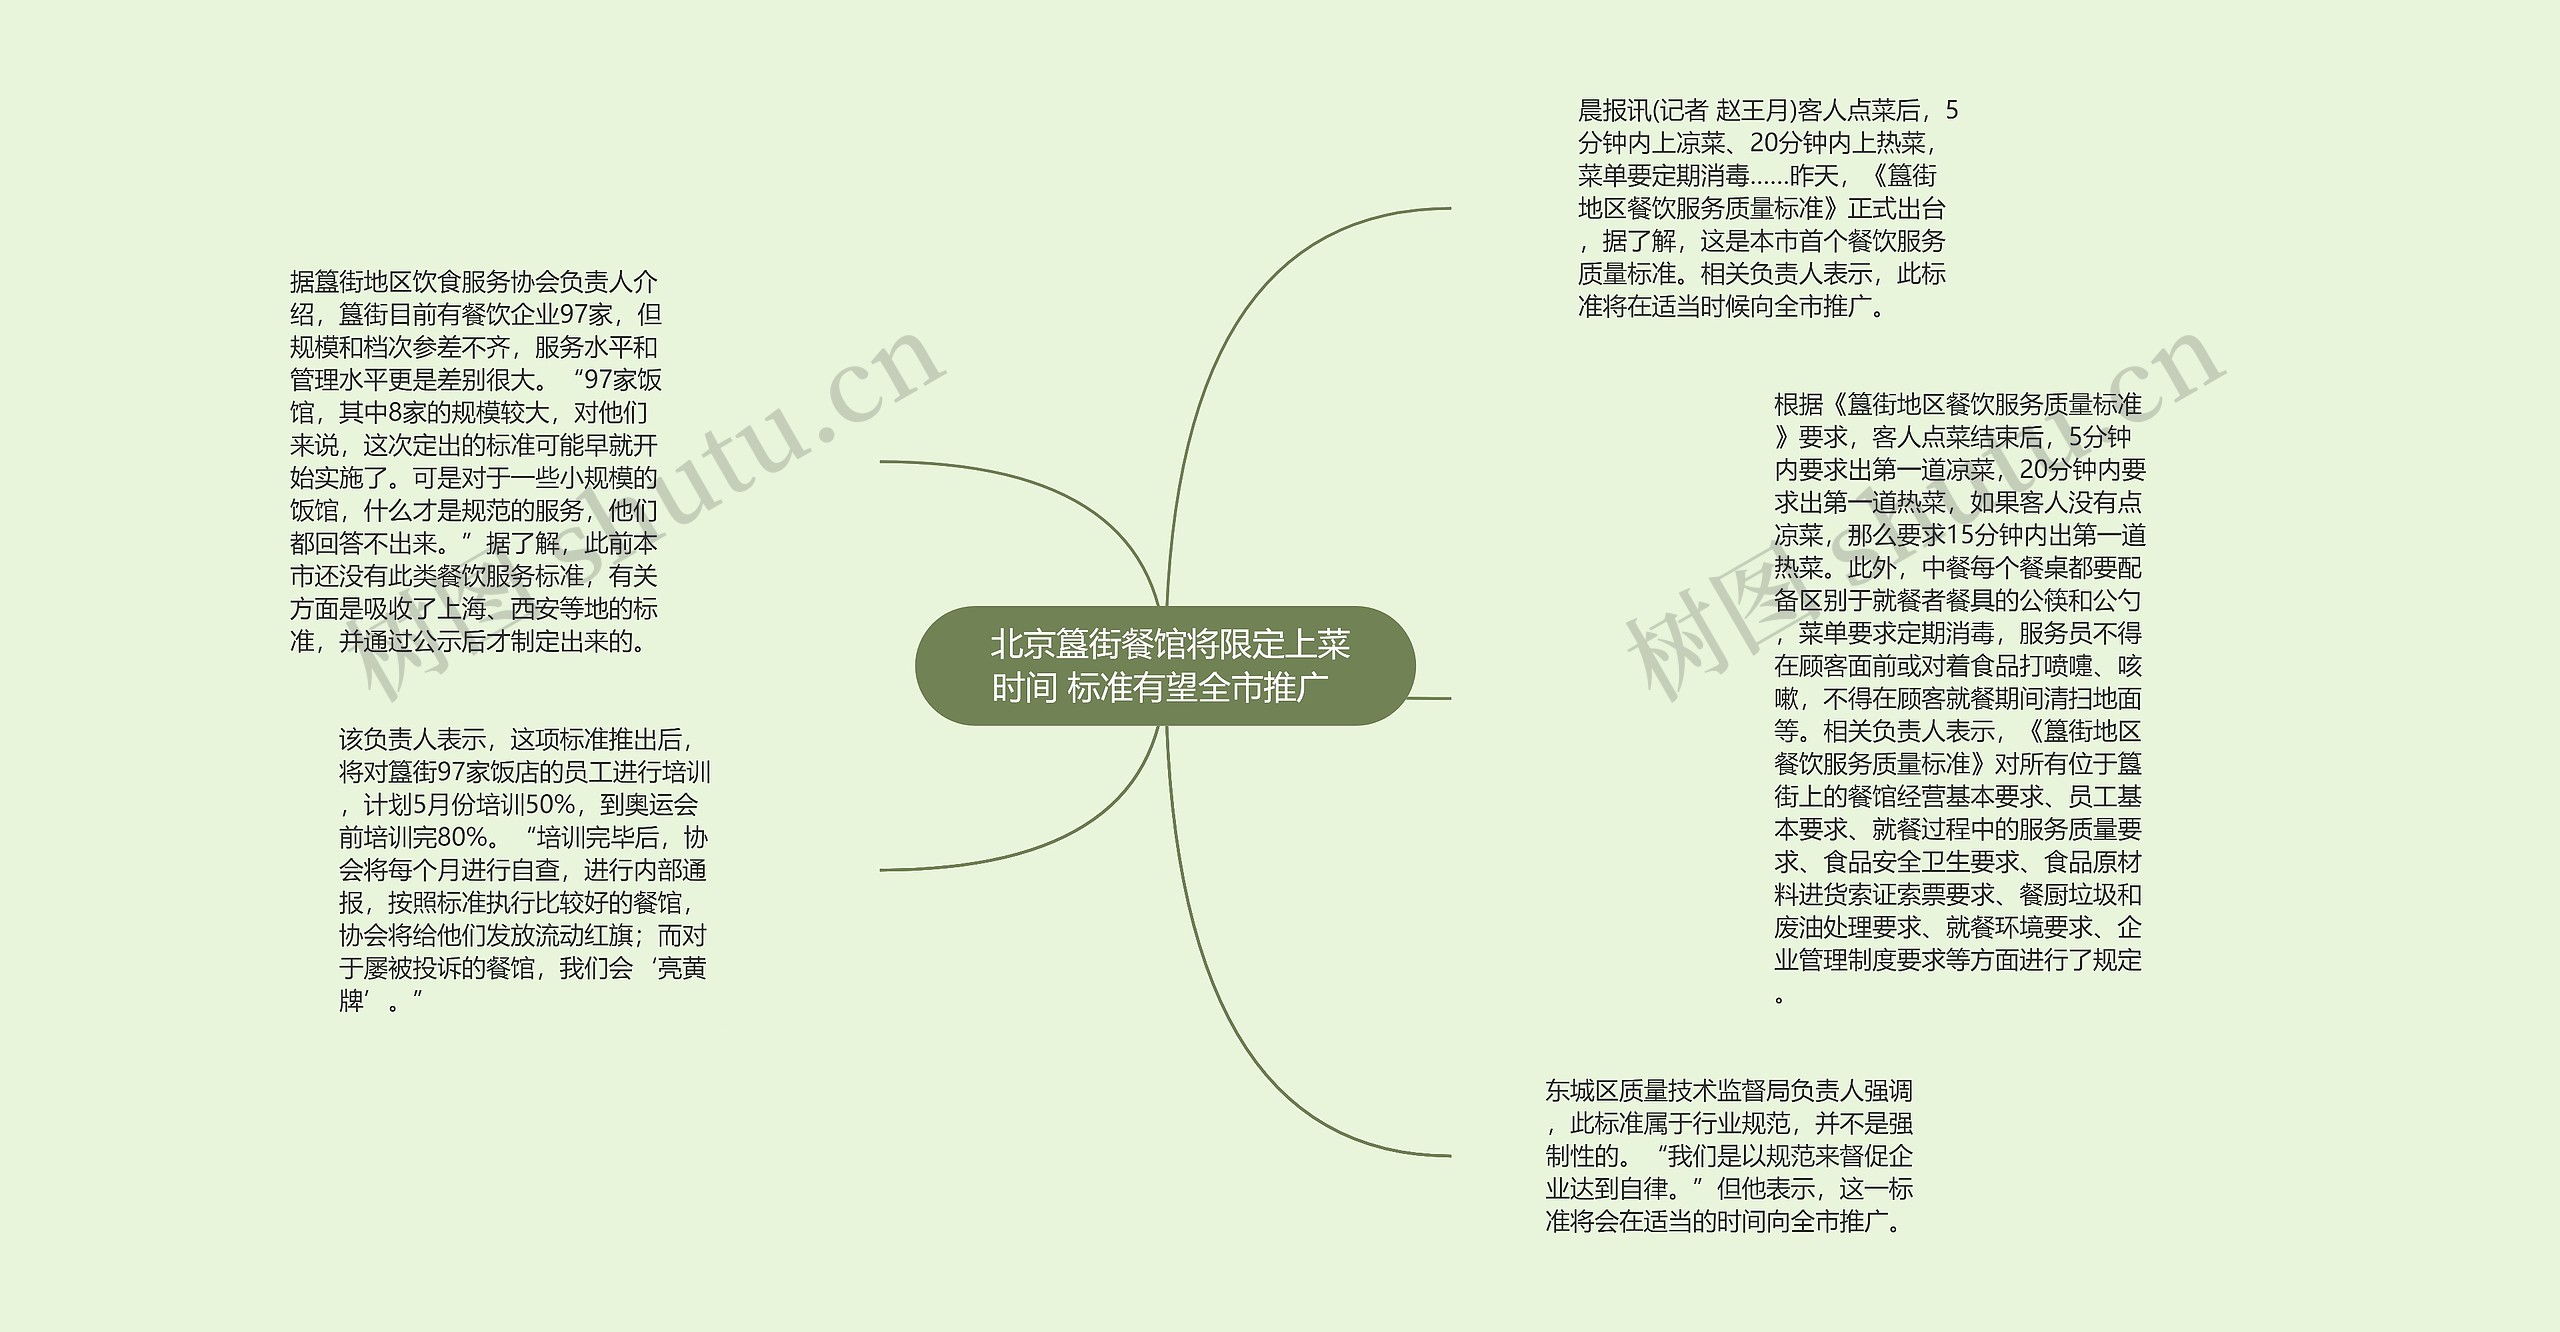  北京簋街餐馆将限定上菜时间 标准有望全市推广 思维导图